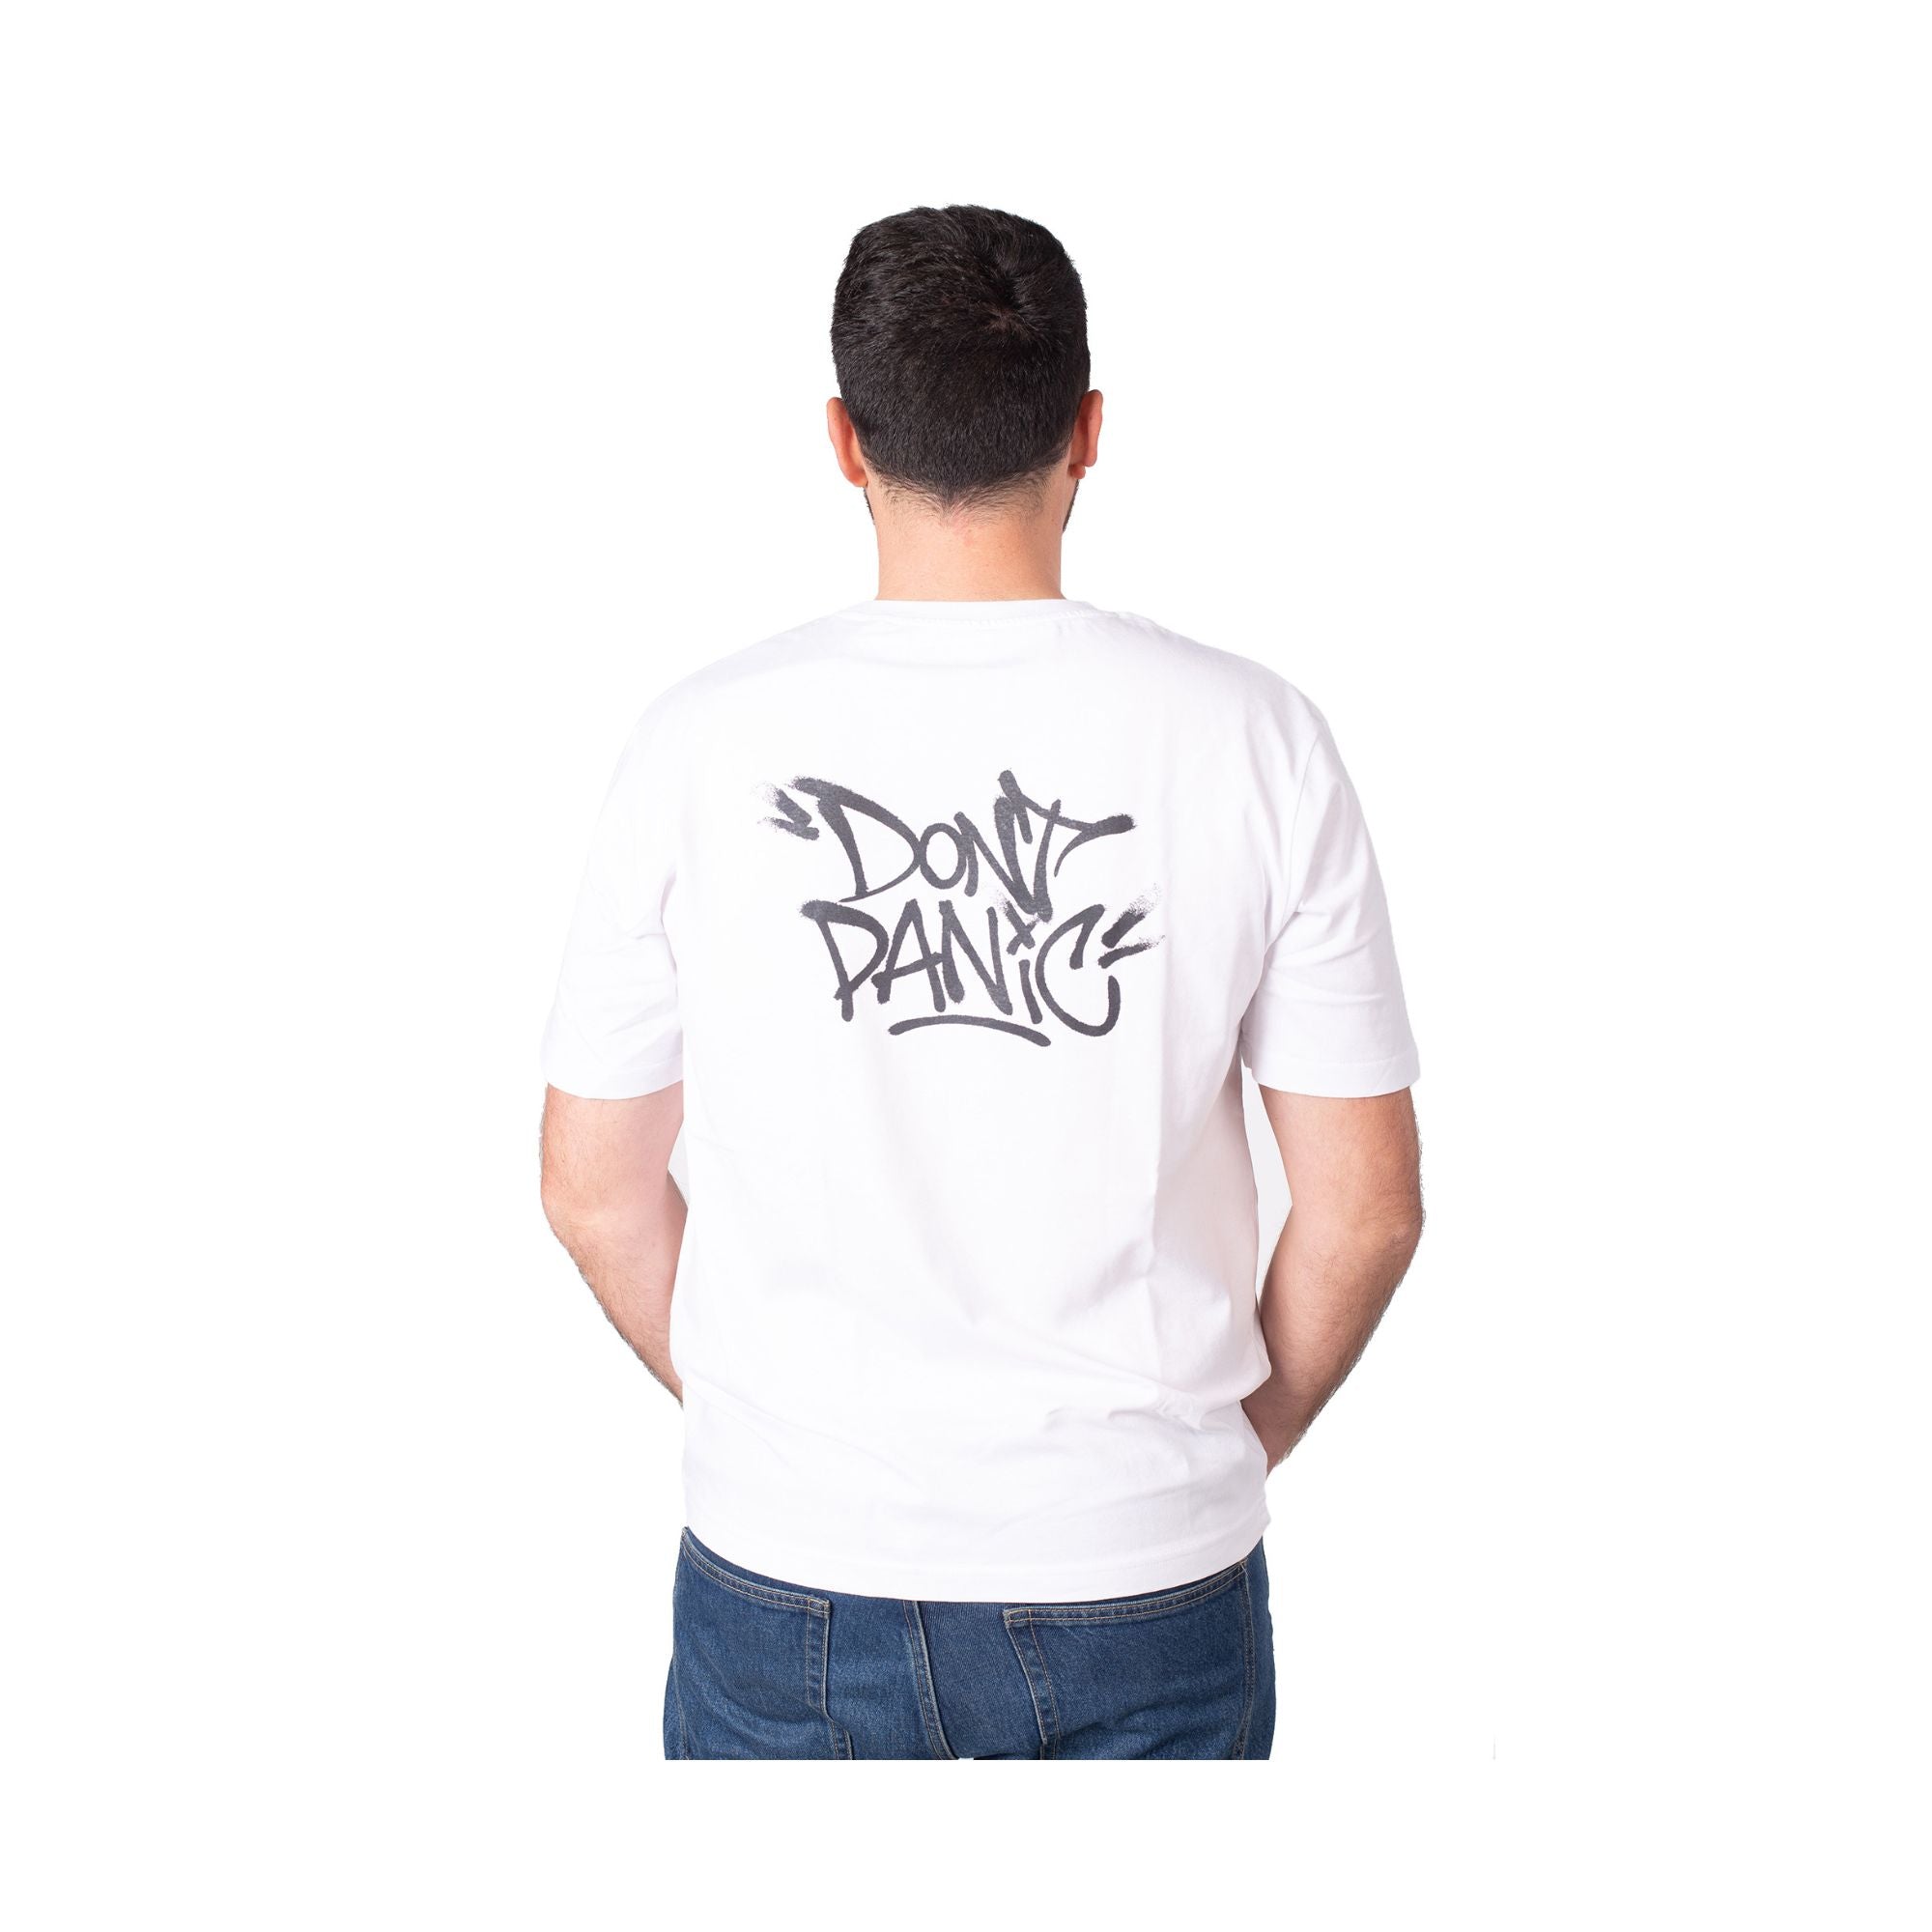 Retro T-shirt con maniche corte e stampa sul retro Don't Panic